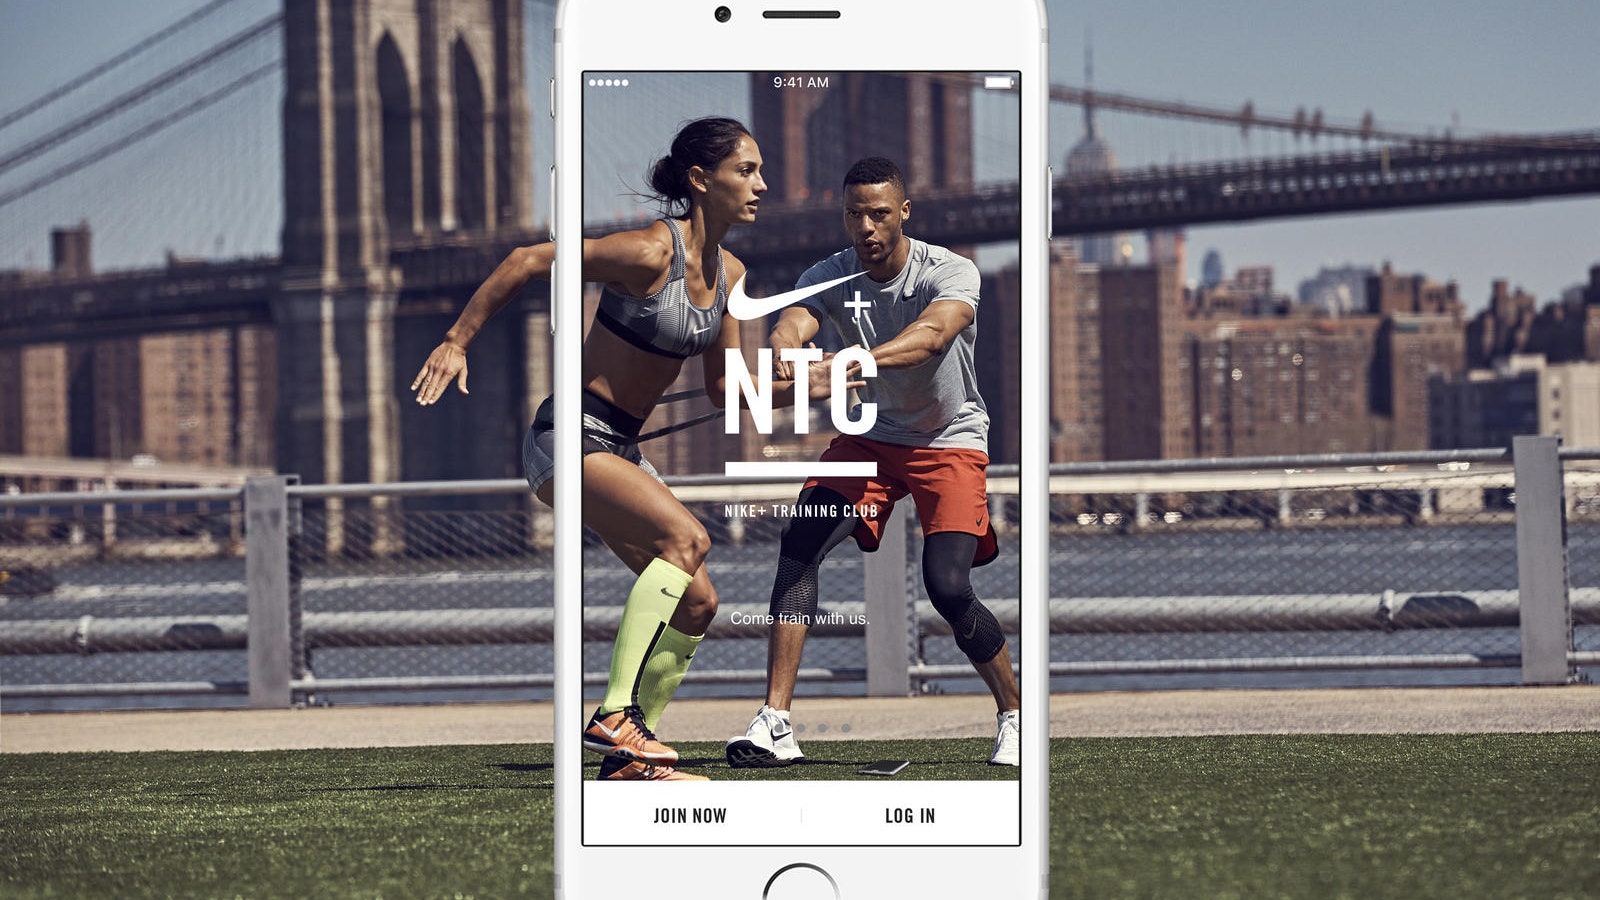 Скачать сейчас обновленное приложение NTC от Nike